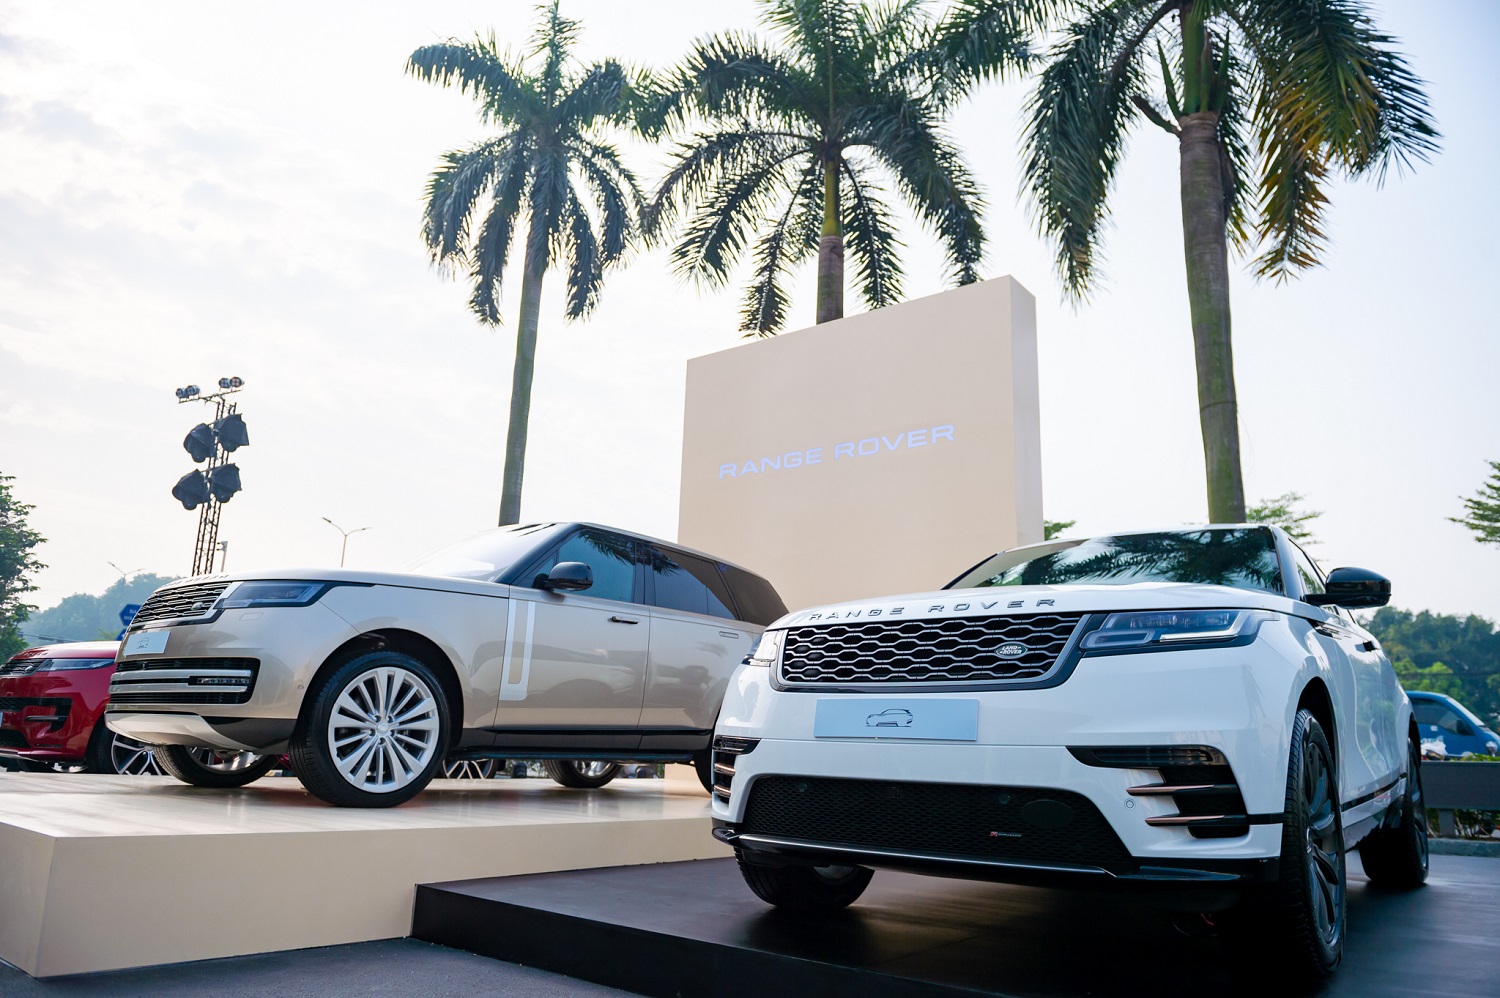 Trung tâm trưng bày sang trọng và hiện đại này hứa hẹn mang đến những trải nghiệm phong phú, nơi khách hàng được khám phá thế giới riêng biệt của từng thương hiệu – Range Rover, Defender và Discovery.